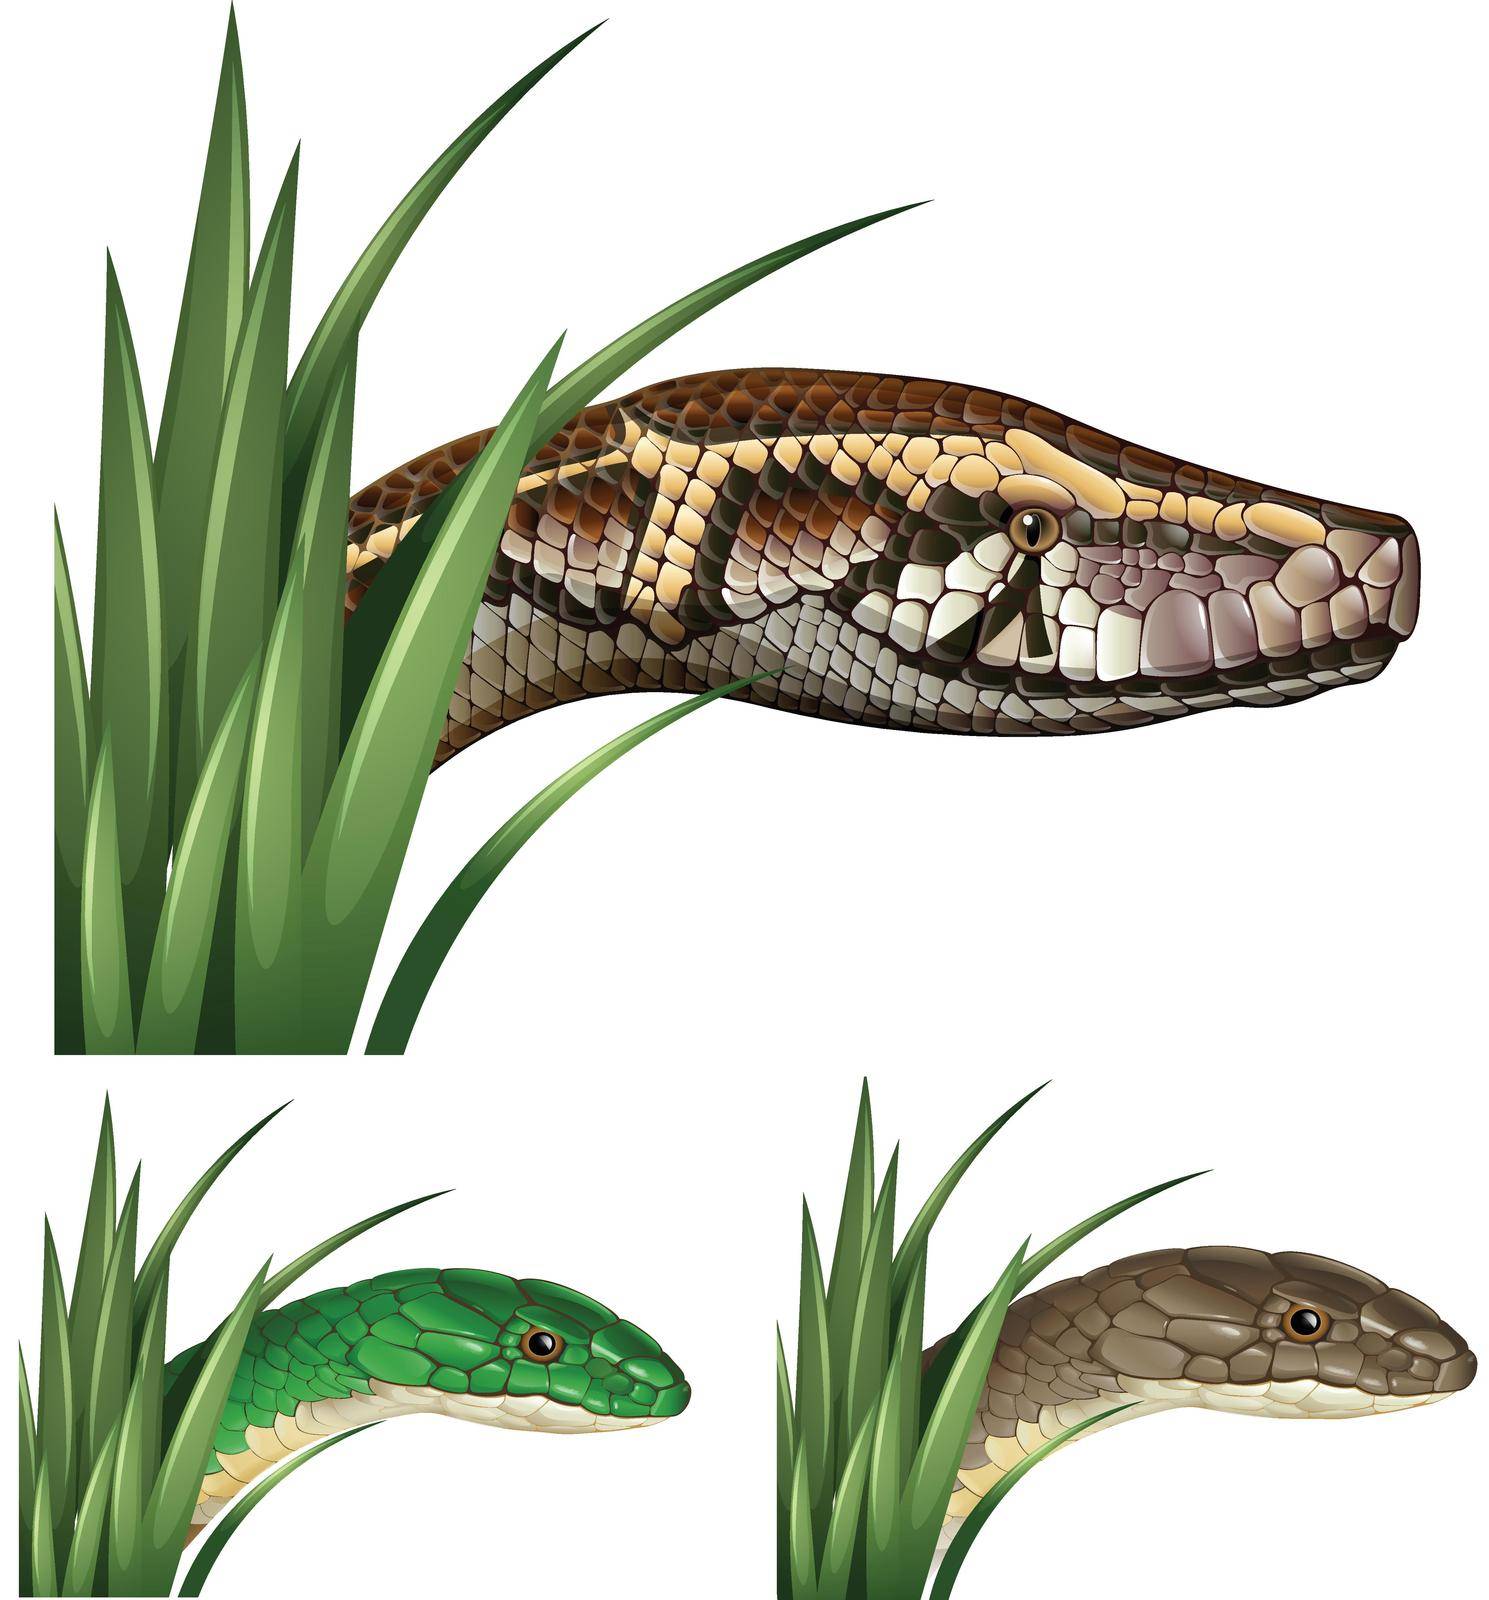 Dangerous snakes in the bush illustration